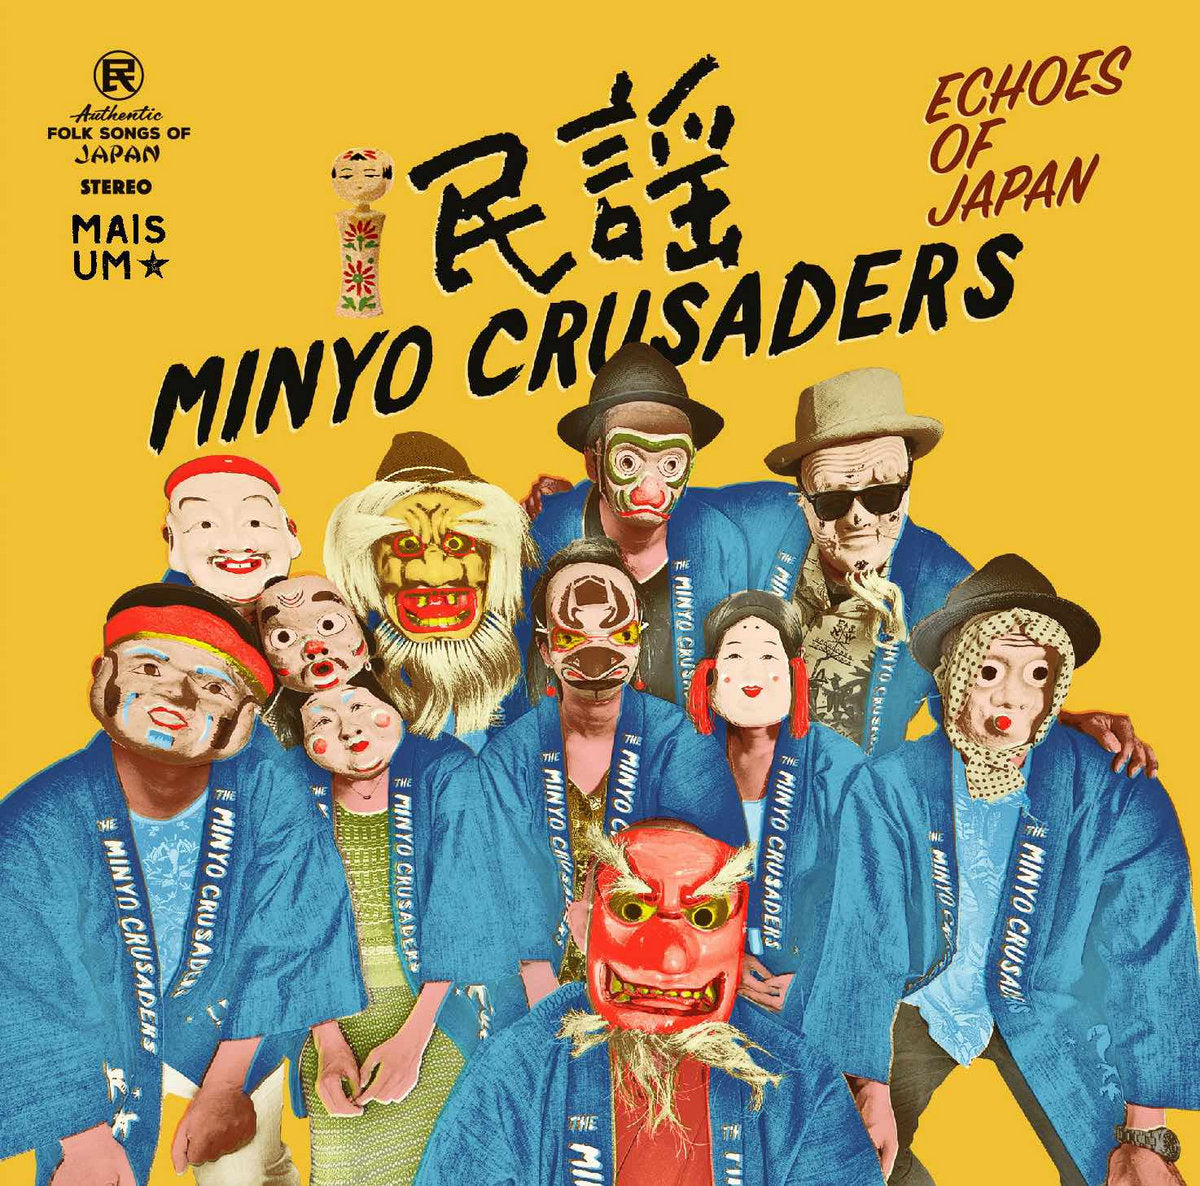 Minyo Crusaders - Echoes